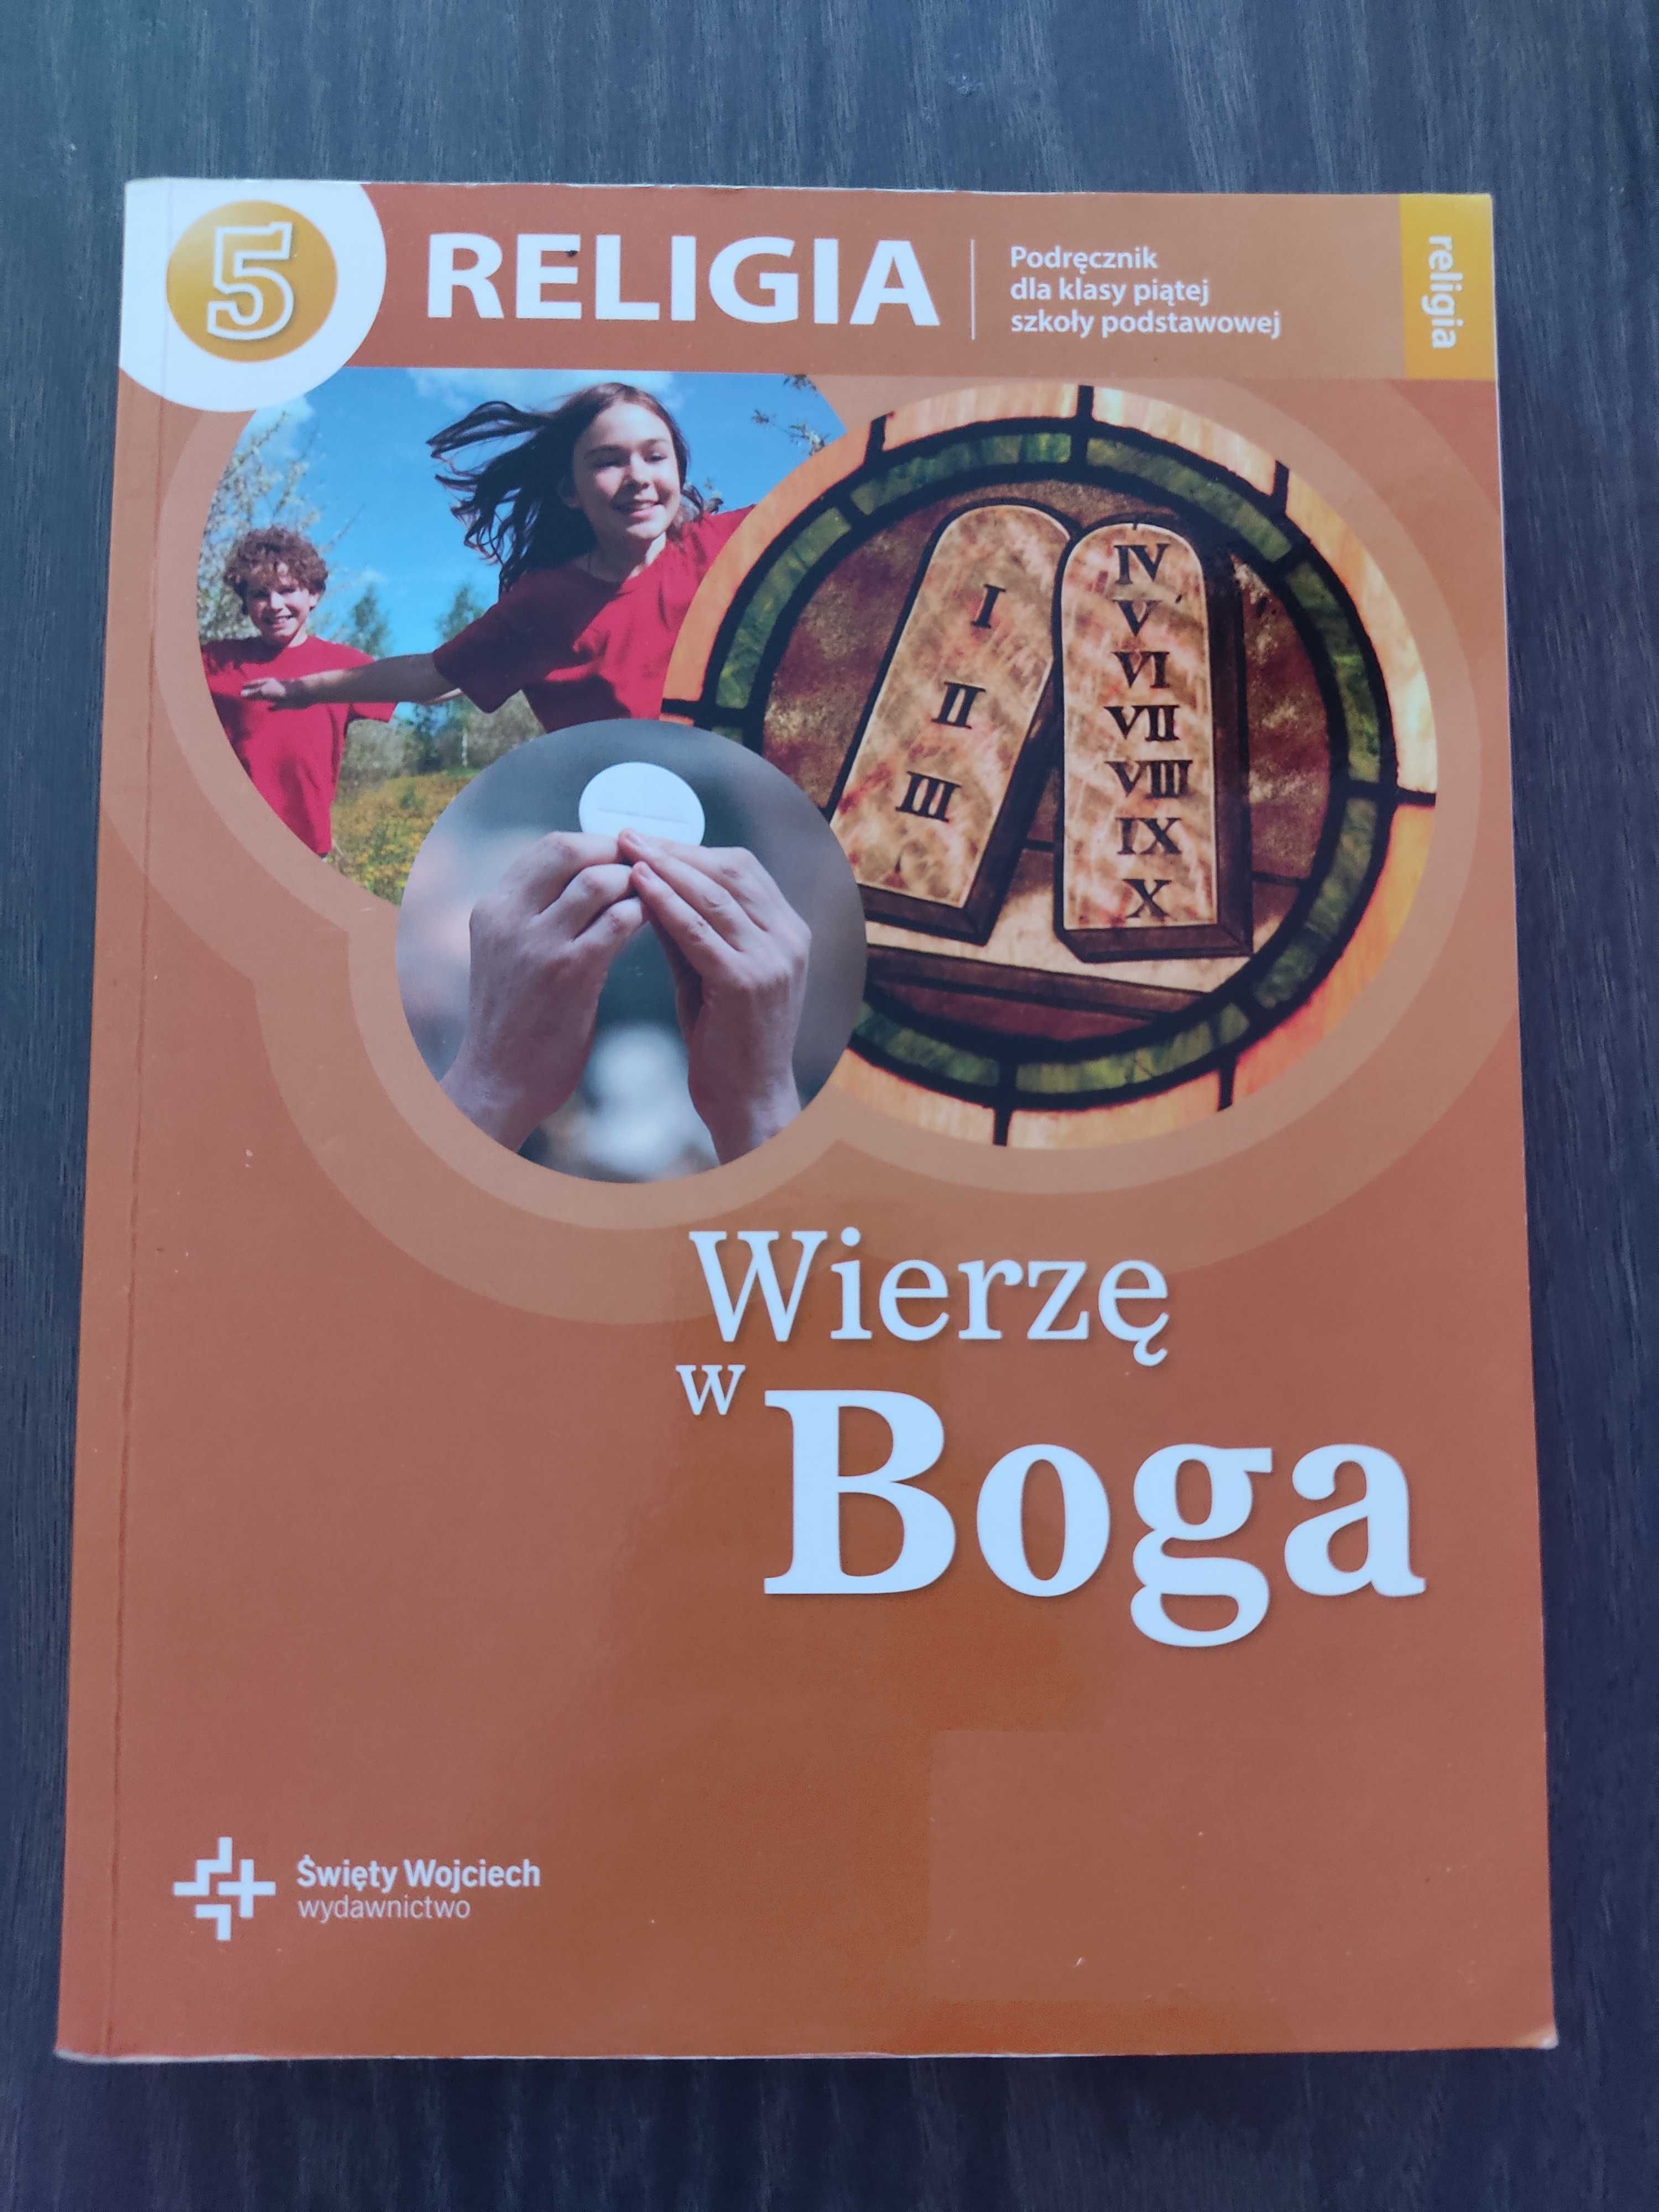 Podręcznik do religii dla klasy 5, wydawnictwo Święty Wojciech.